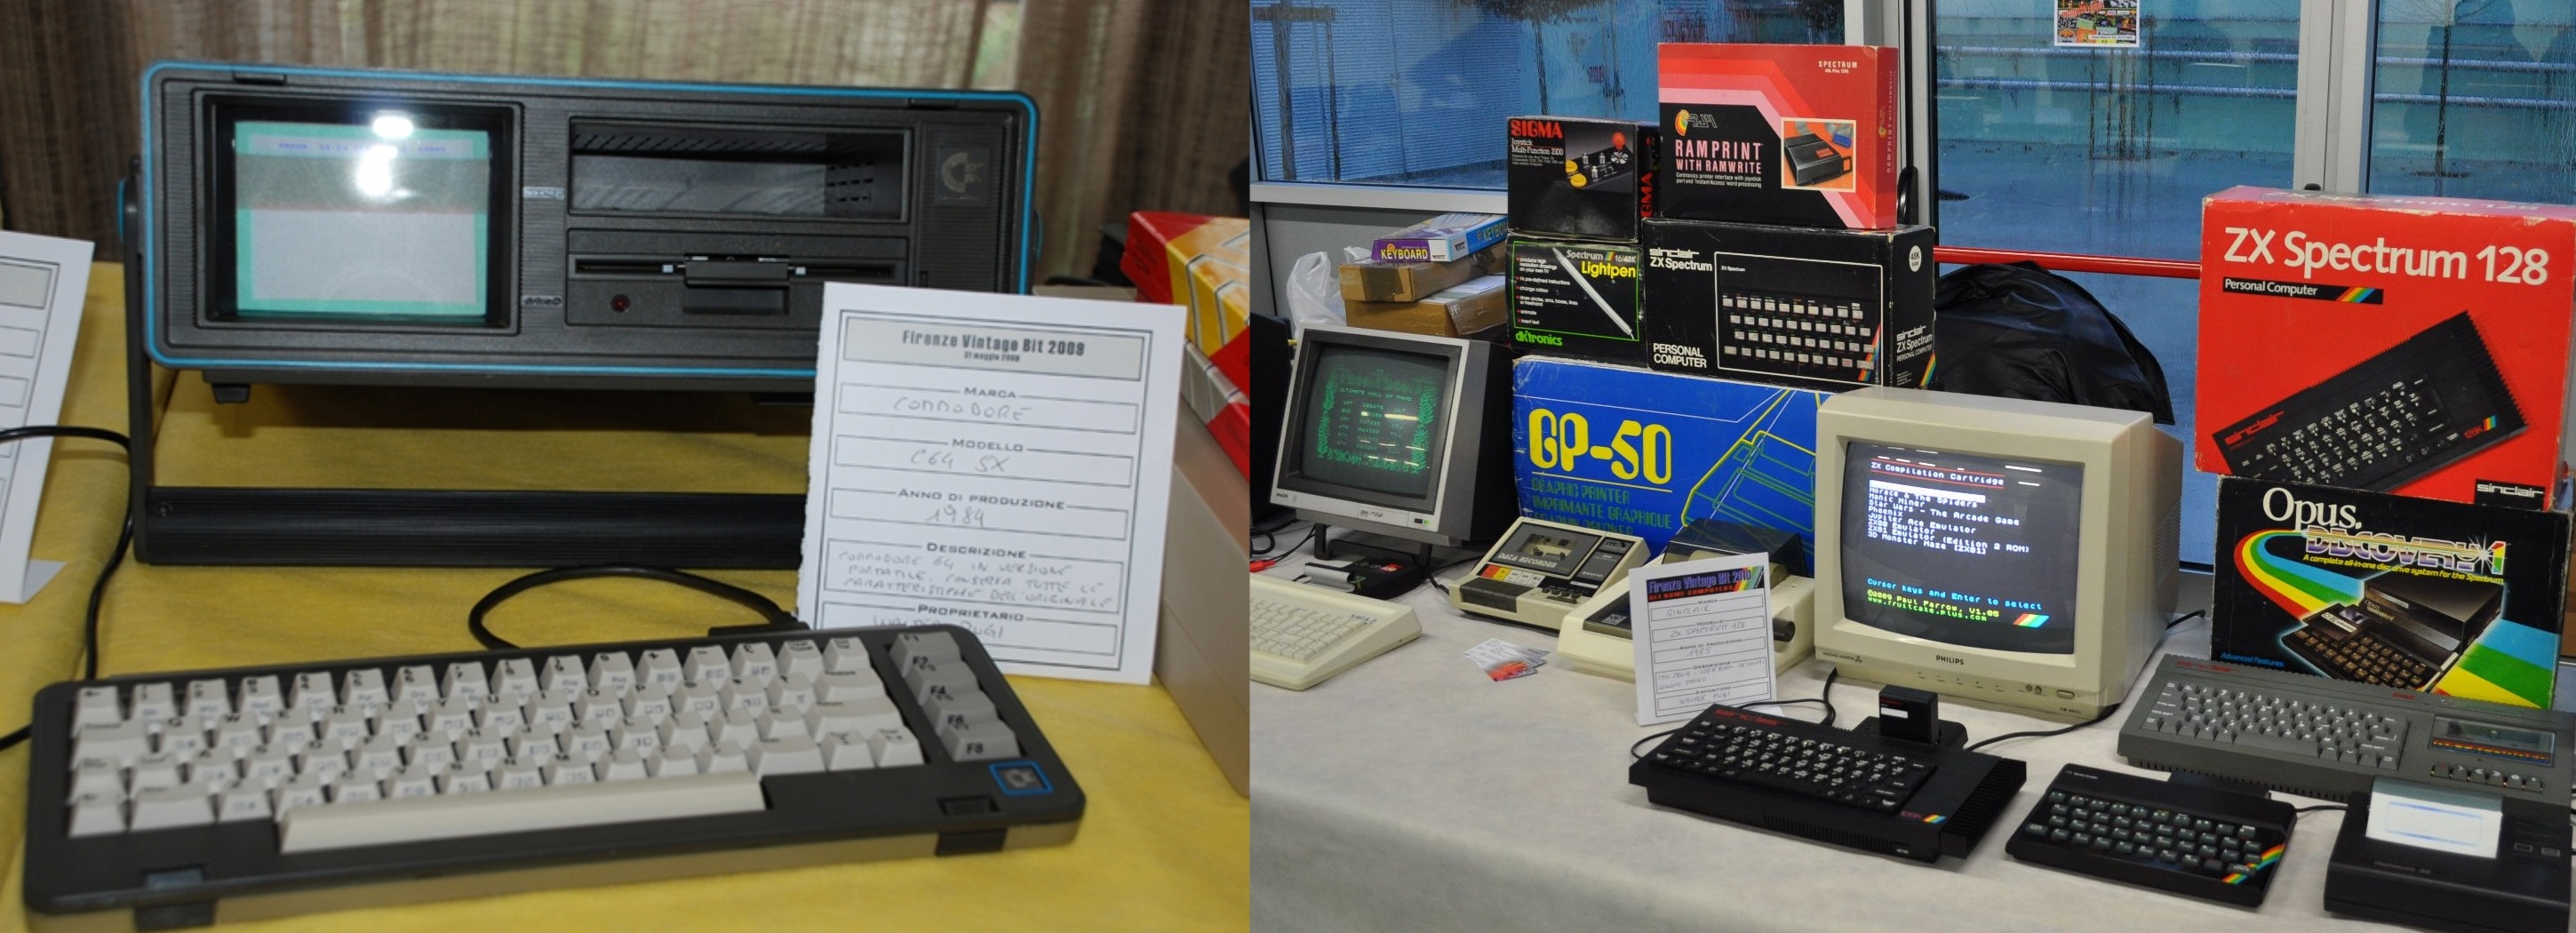 Il Commodore C64SX del 1989 e altre macchine